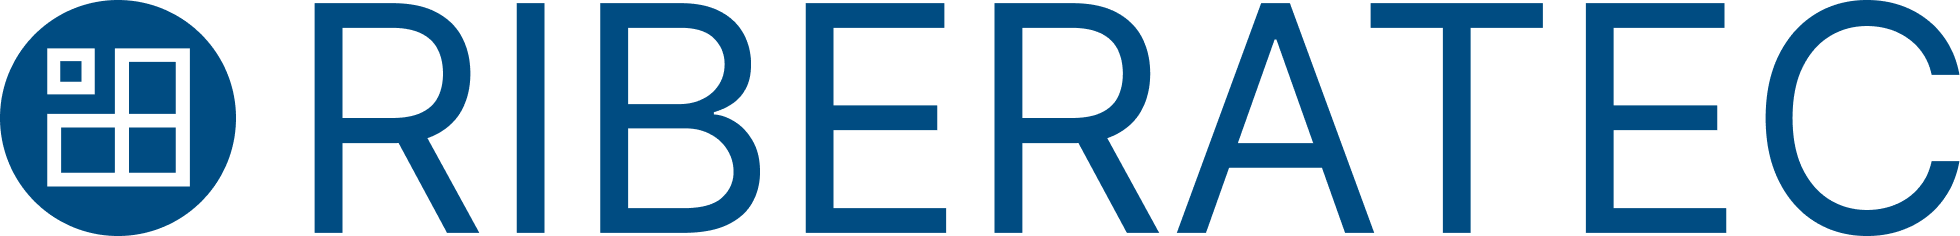 RIBERATEC Logo